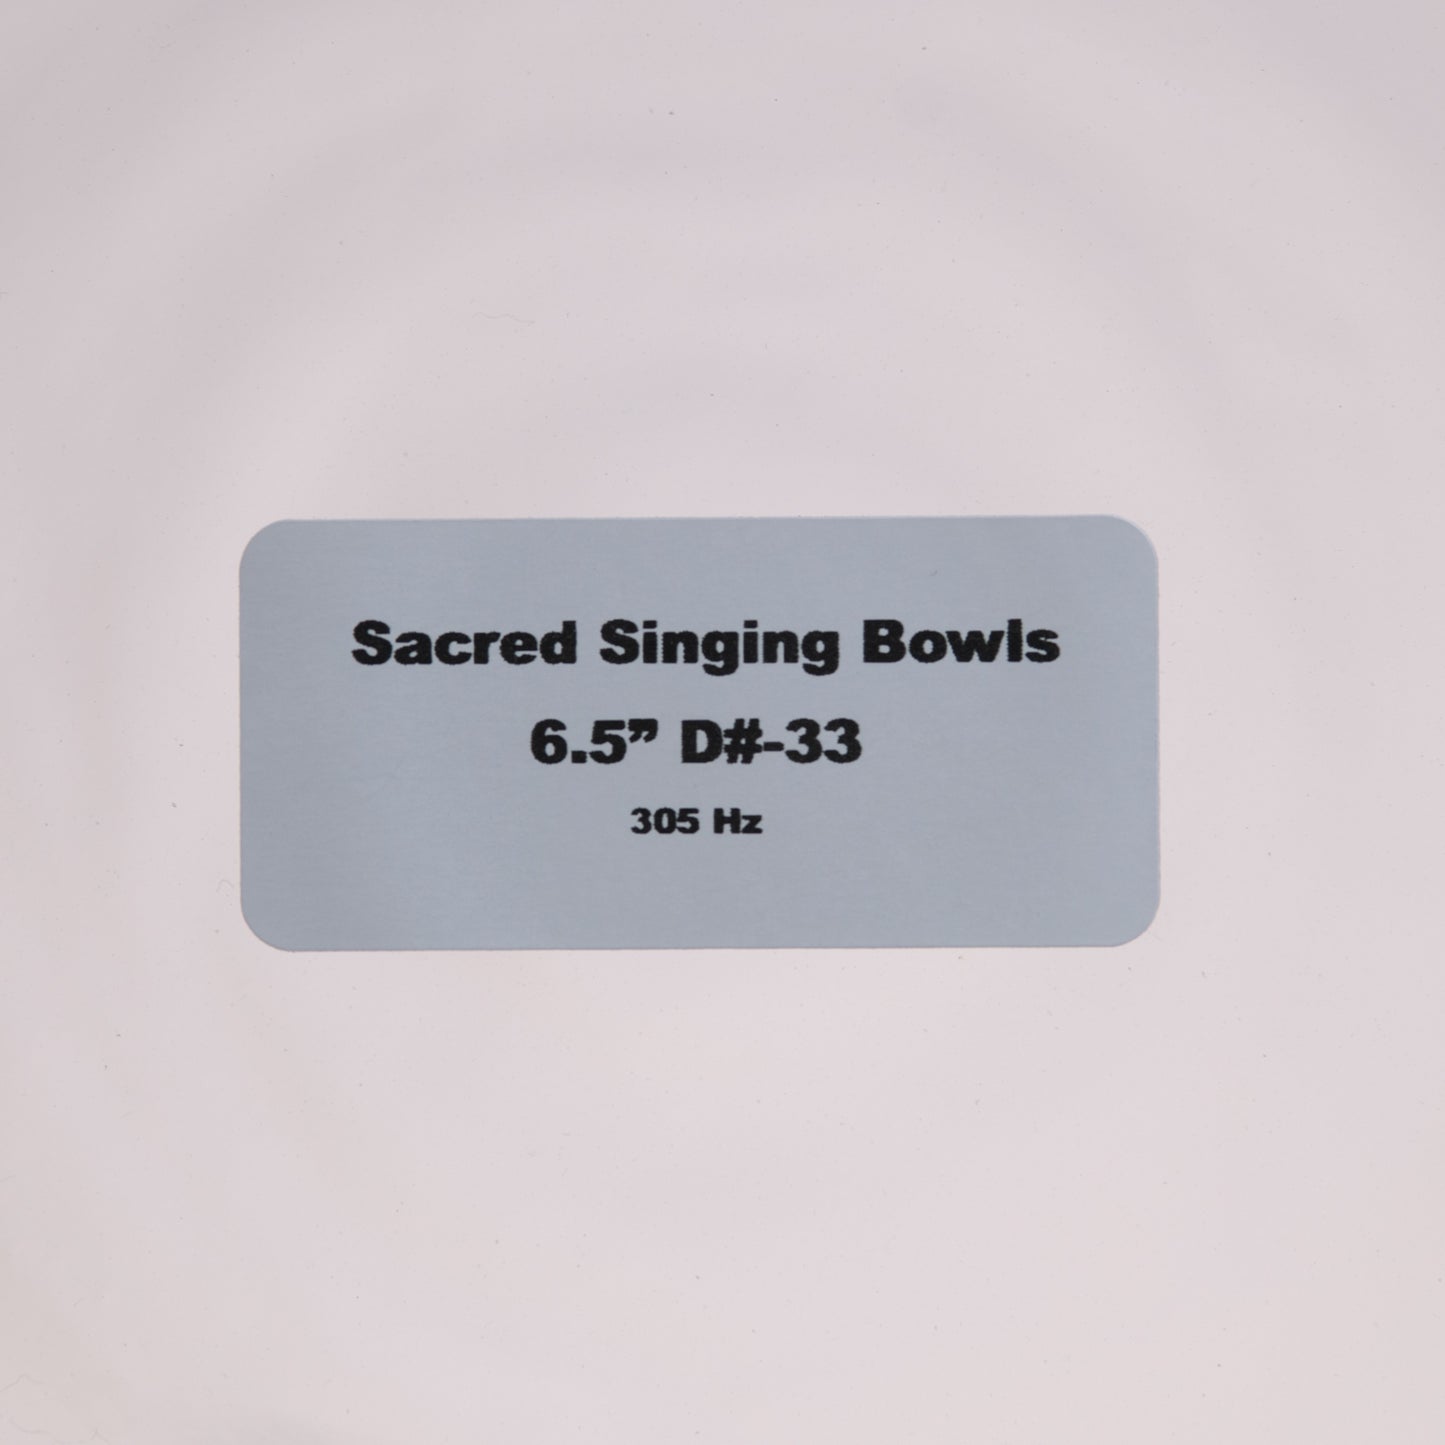 6.5" D#-33 Clear Quartz Crystal Singing Bowl, Sacred Singing Bowls